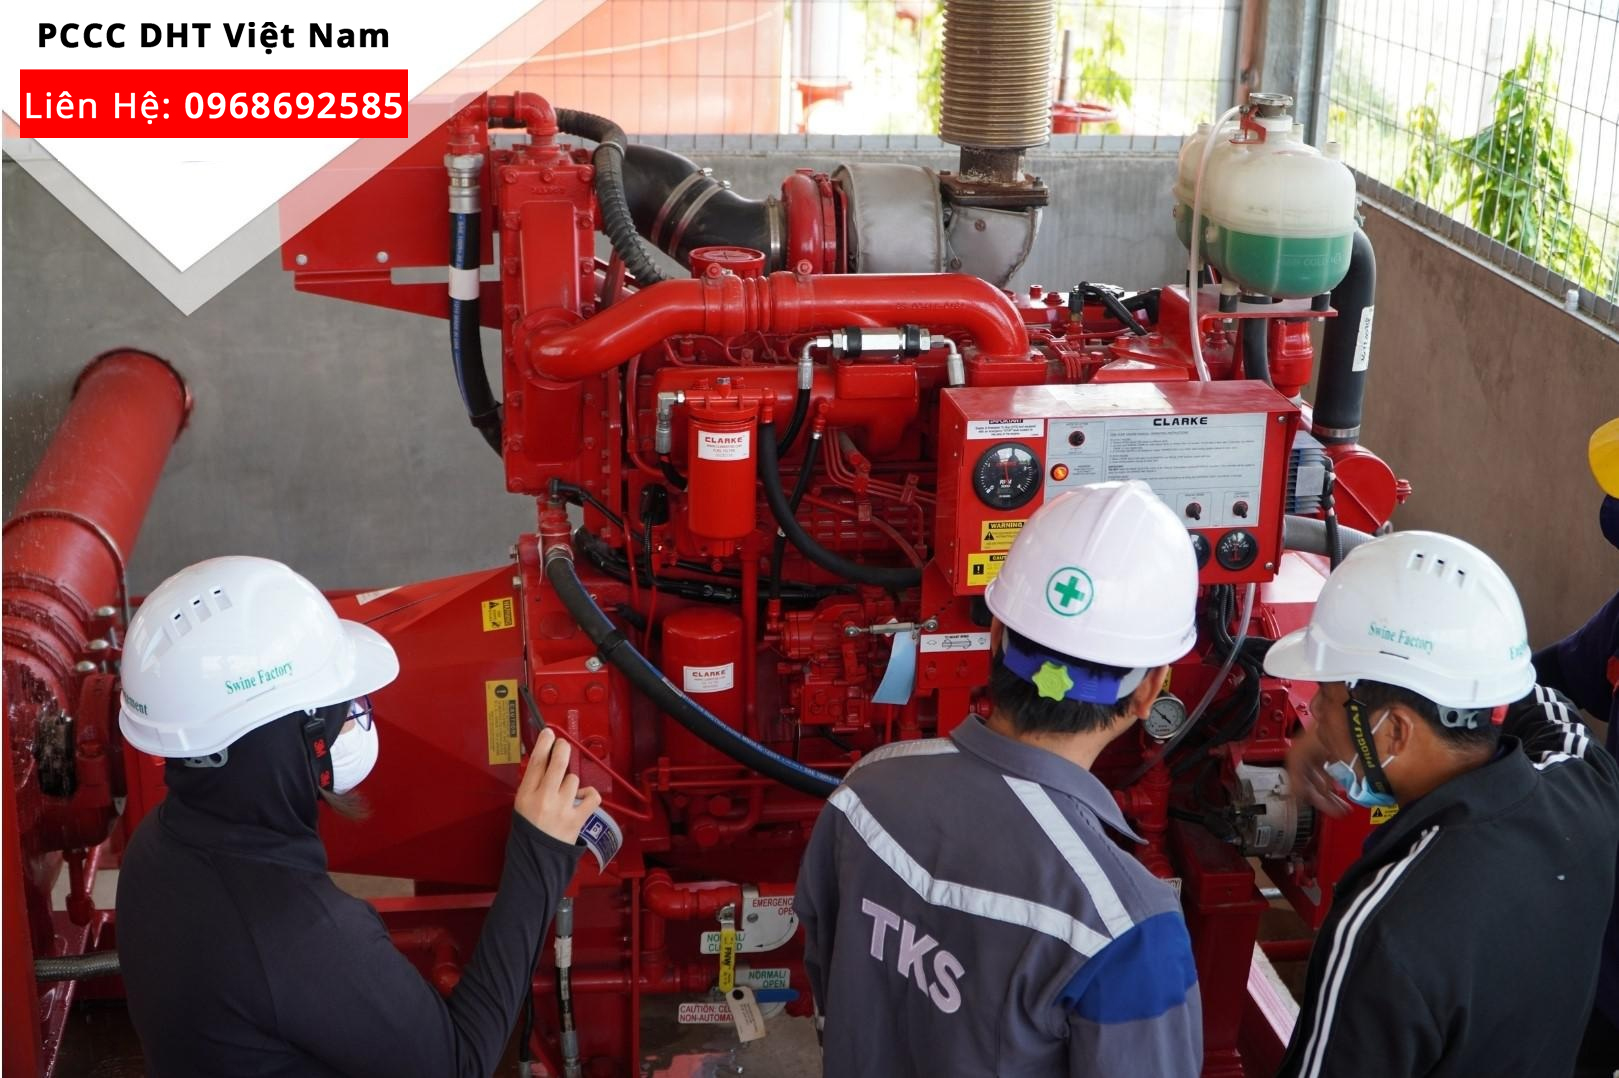 Dịch vụ bảo trì, bảo dưỡng hệ thống phòng cháy chữa cháy tại Cụm công nghiệp Tân Việt